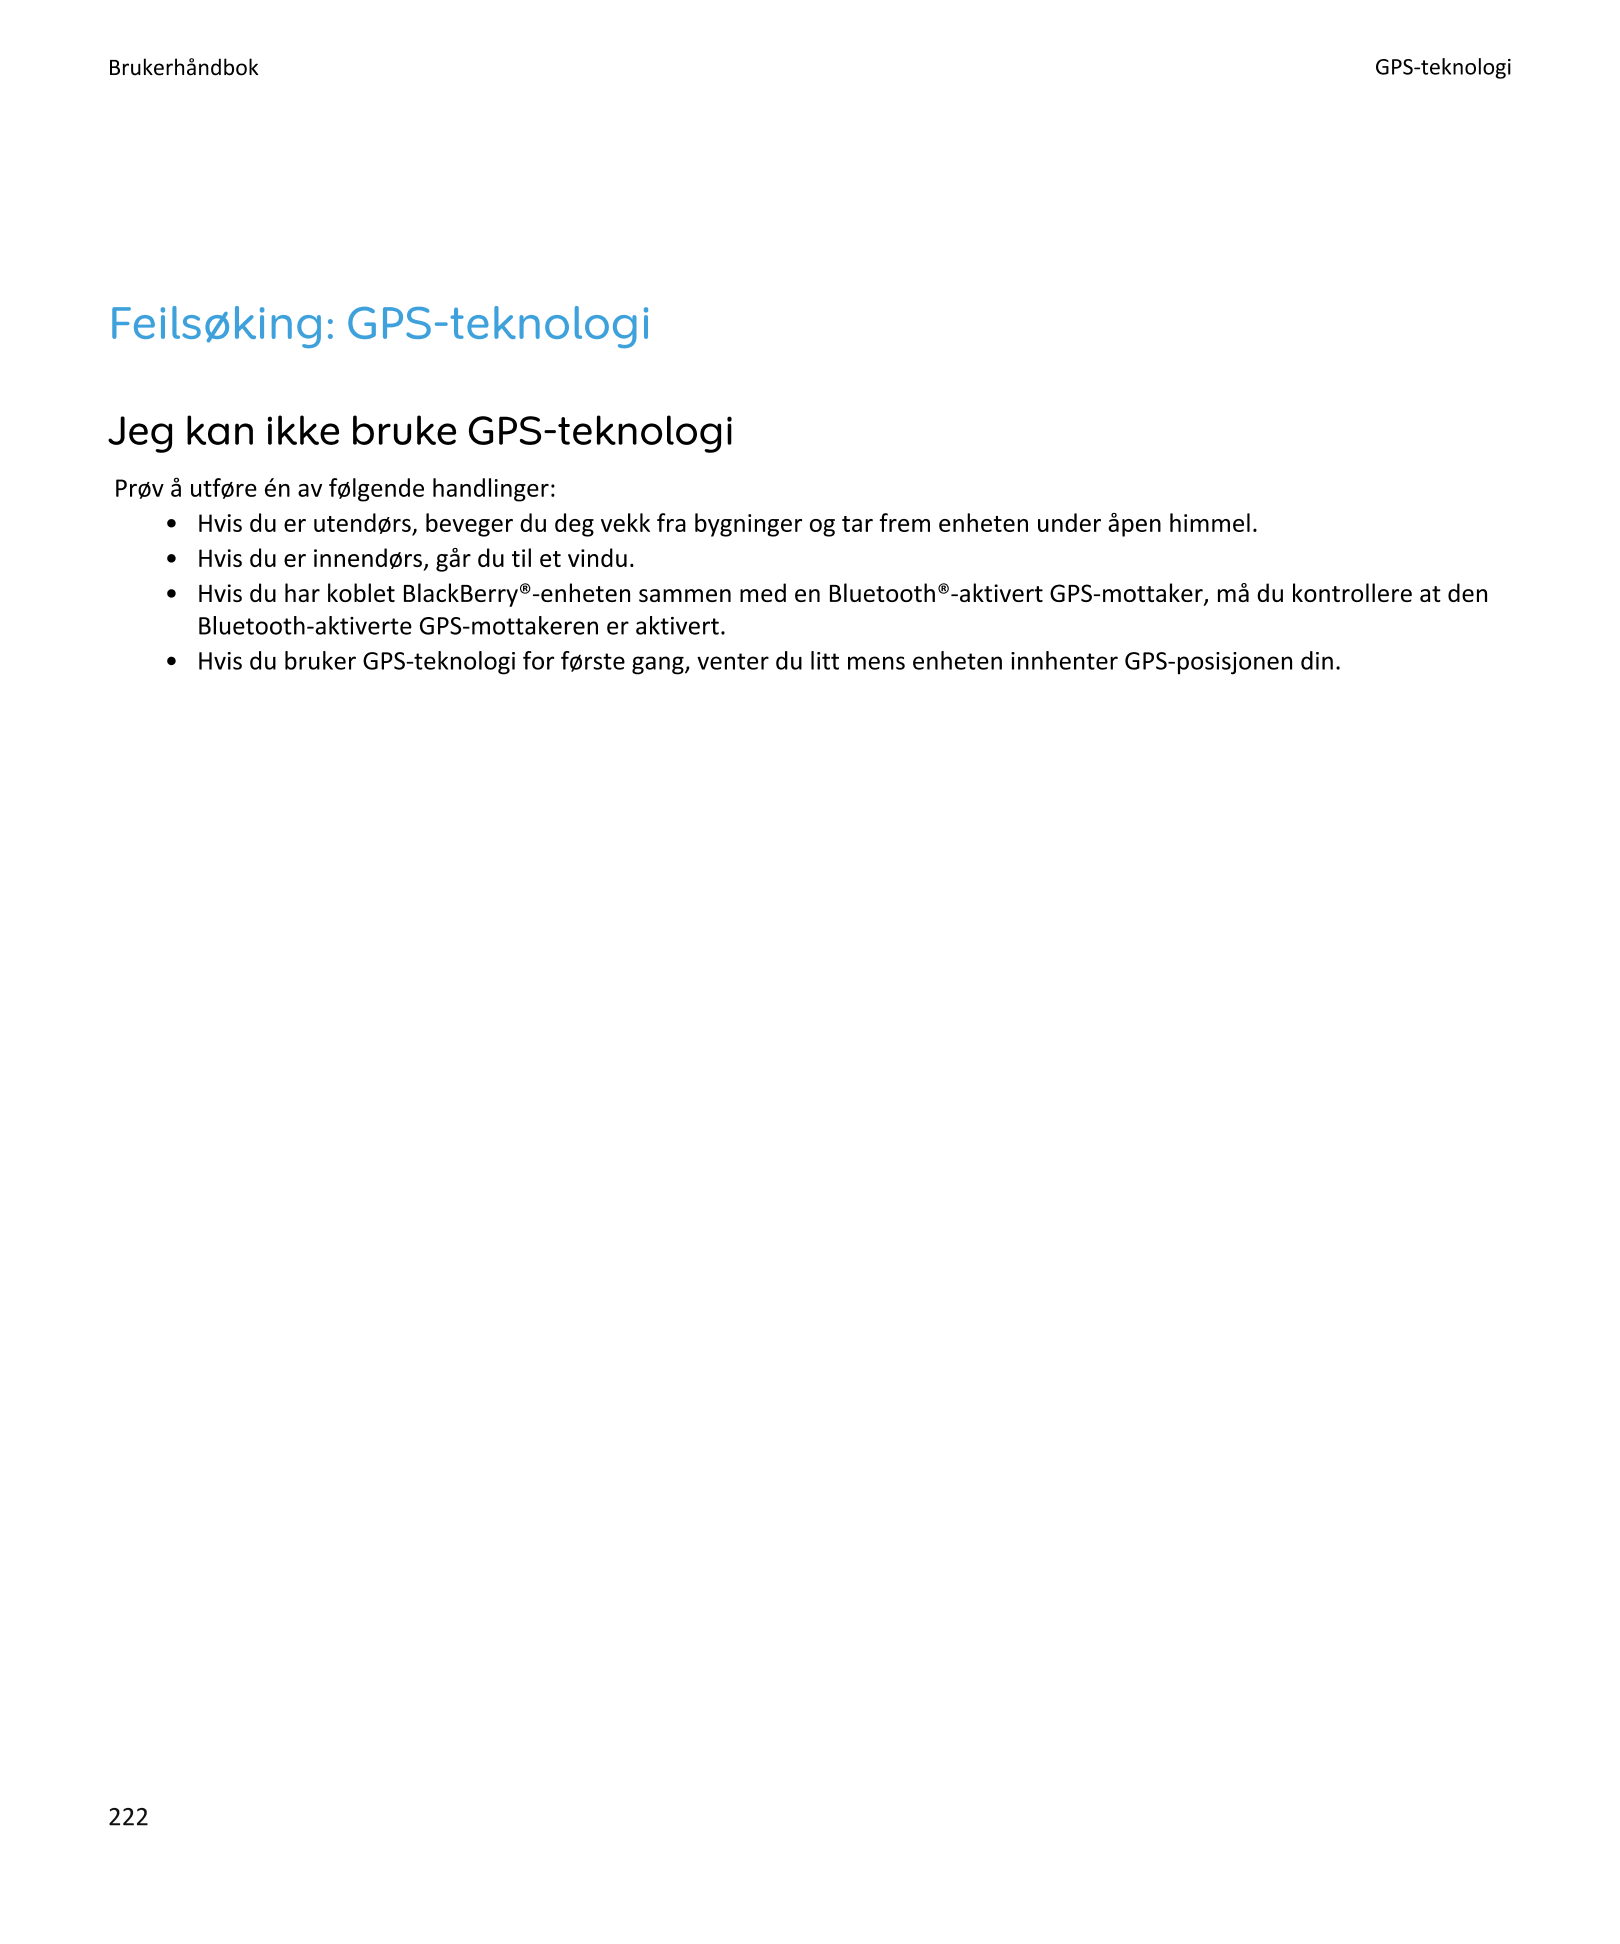 Brukerhåndbok GPS-teknologi
Feilsøking: GPS-teknologi
Jeg kan ikke bruke GPS-teknologi
Prøv å utføre én av følgende handlinger:
